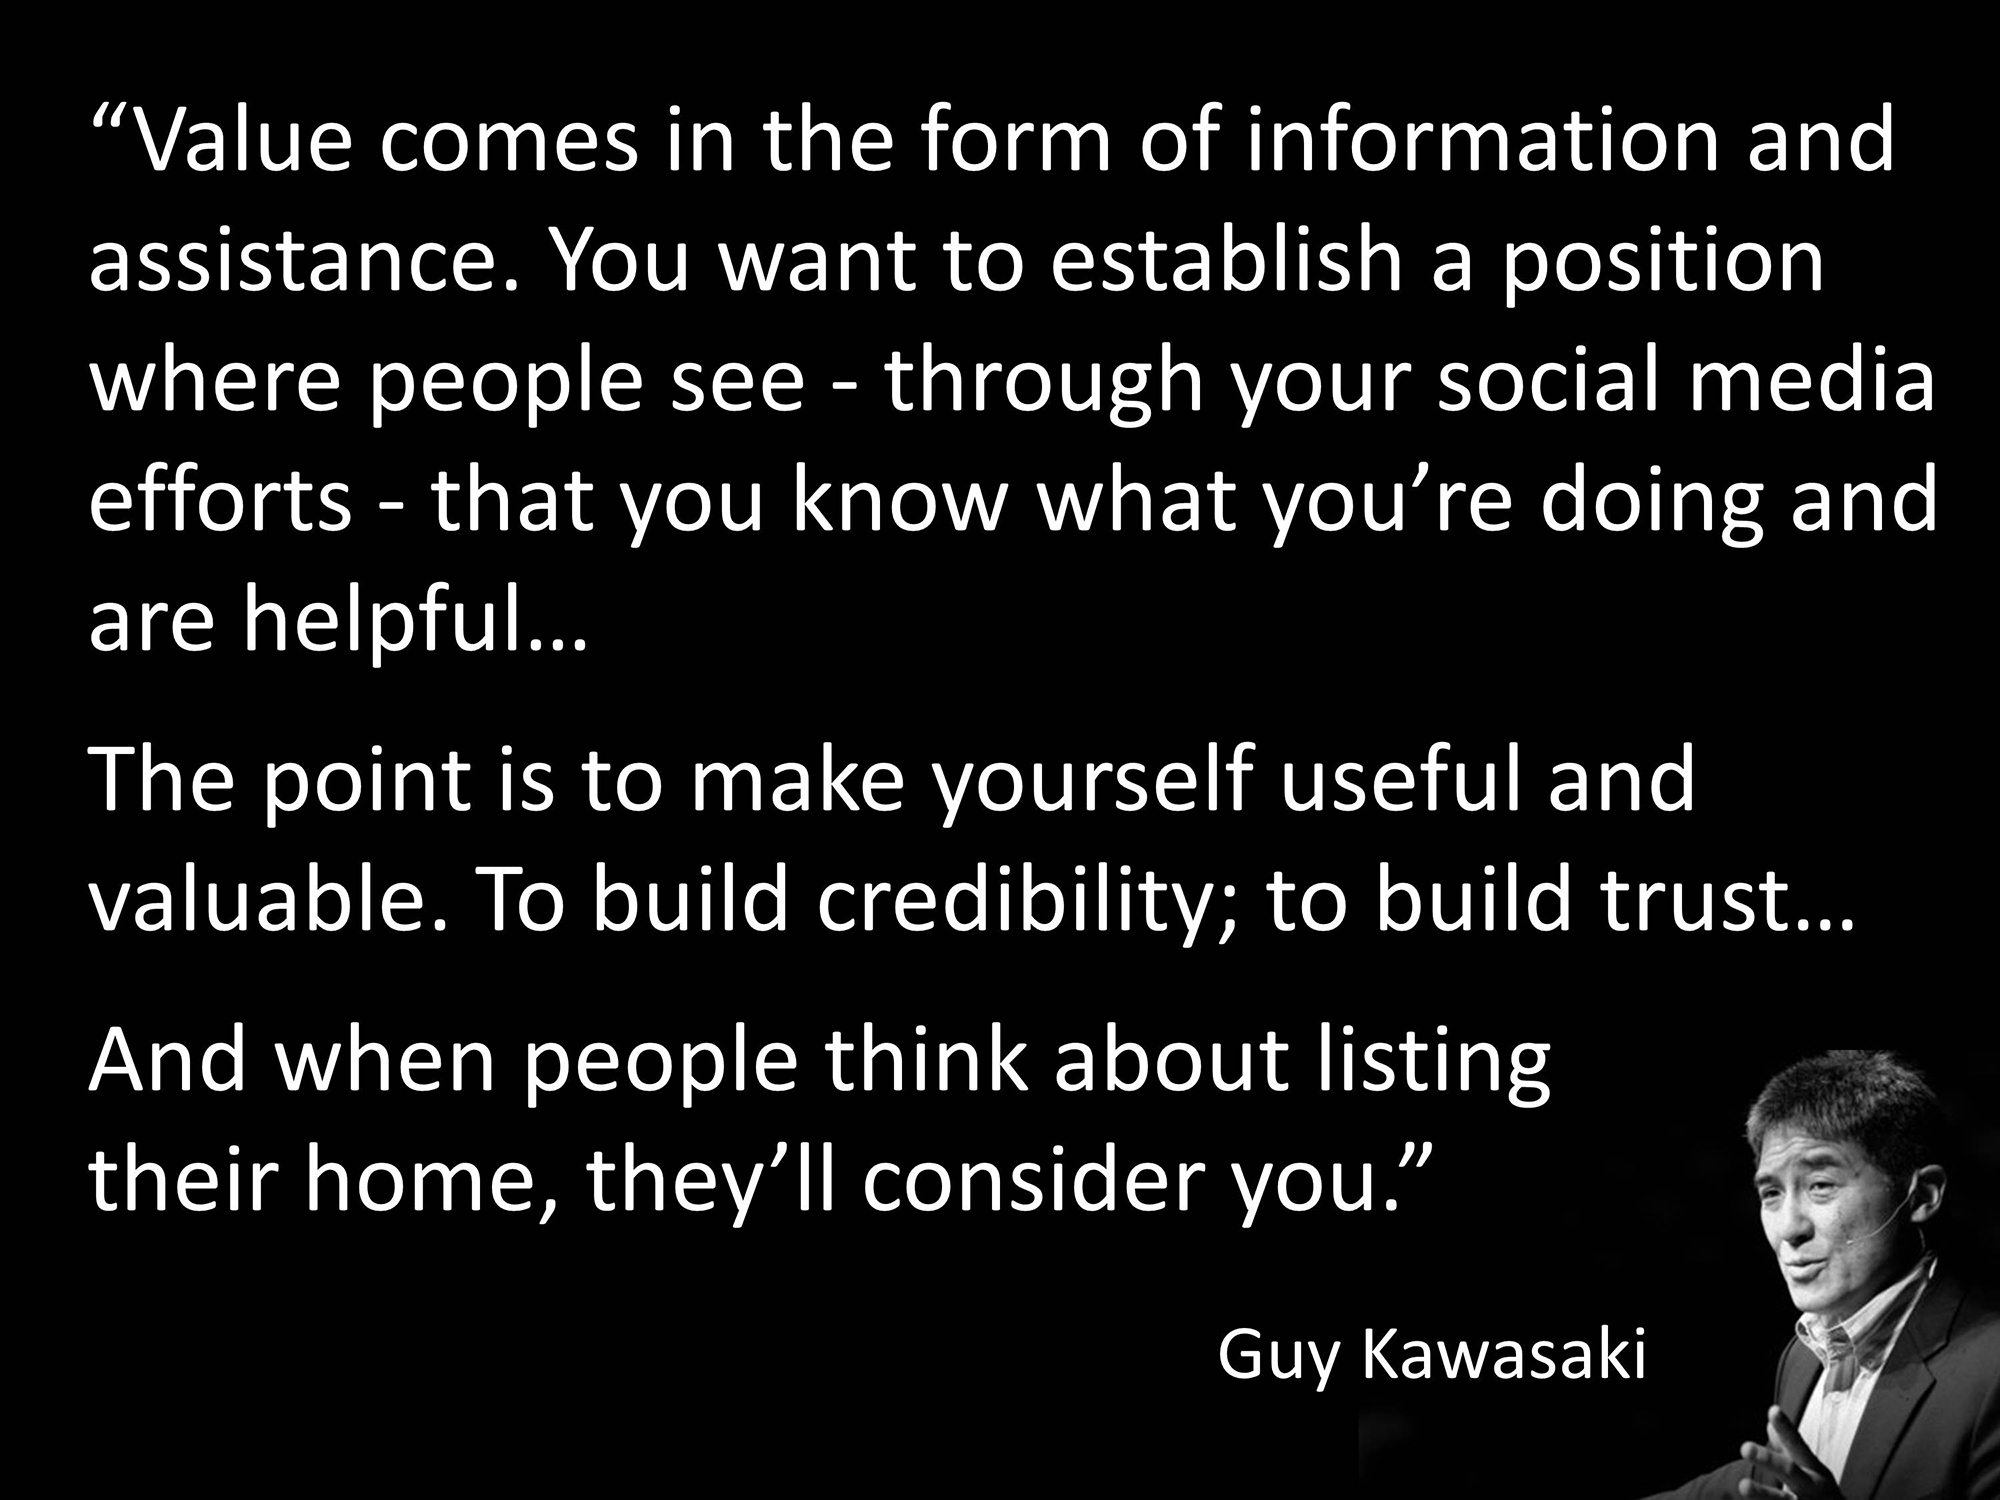 Guy Kawasaki | Keeping Current Matters